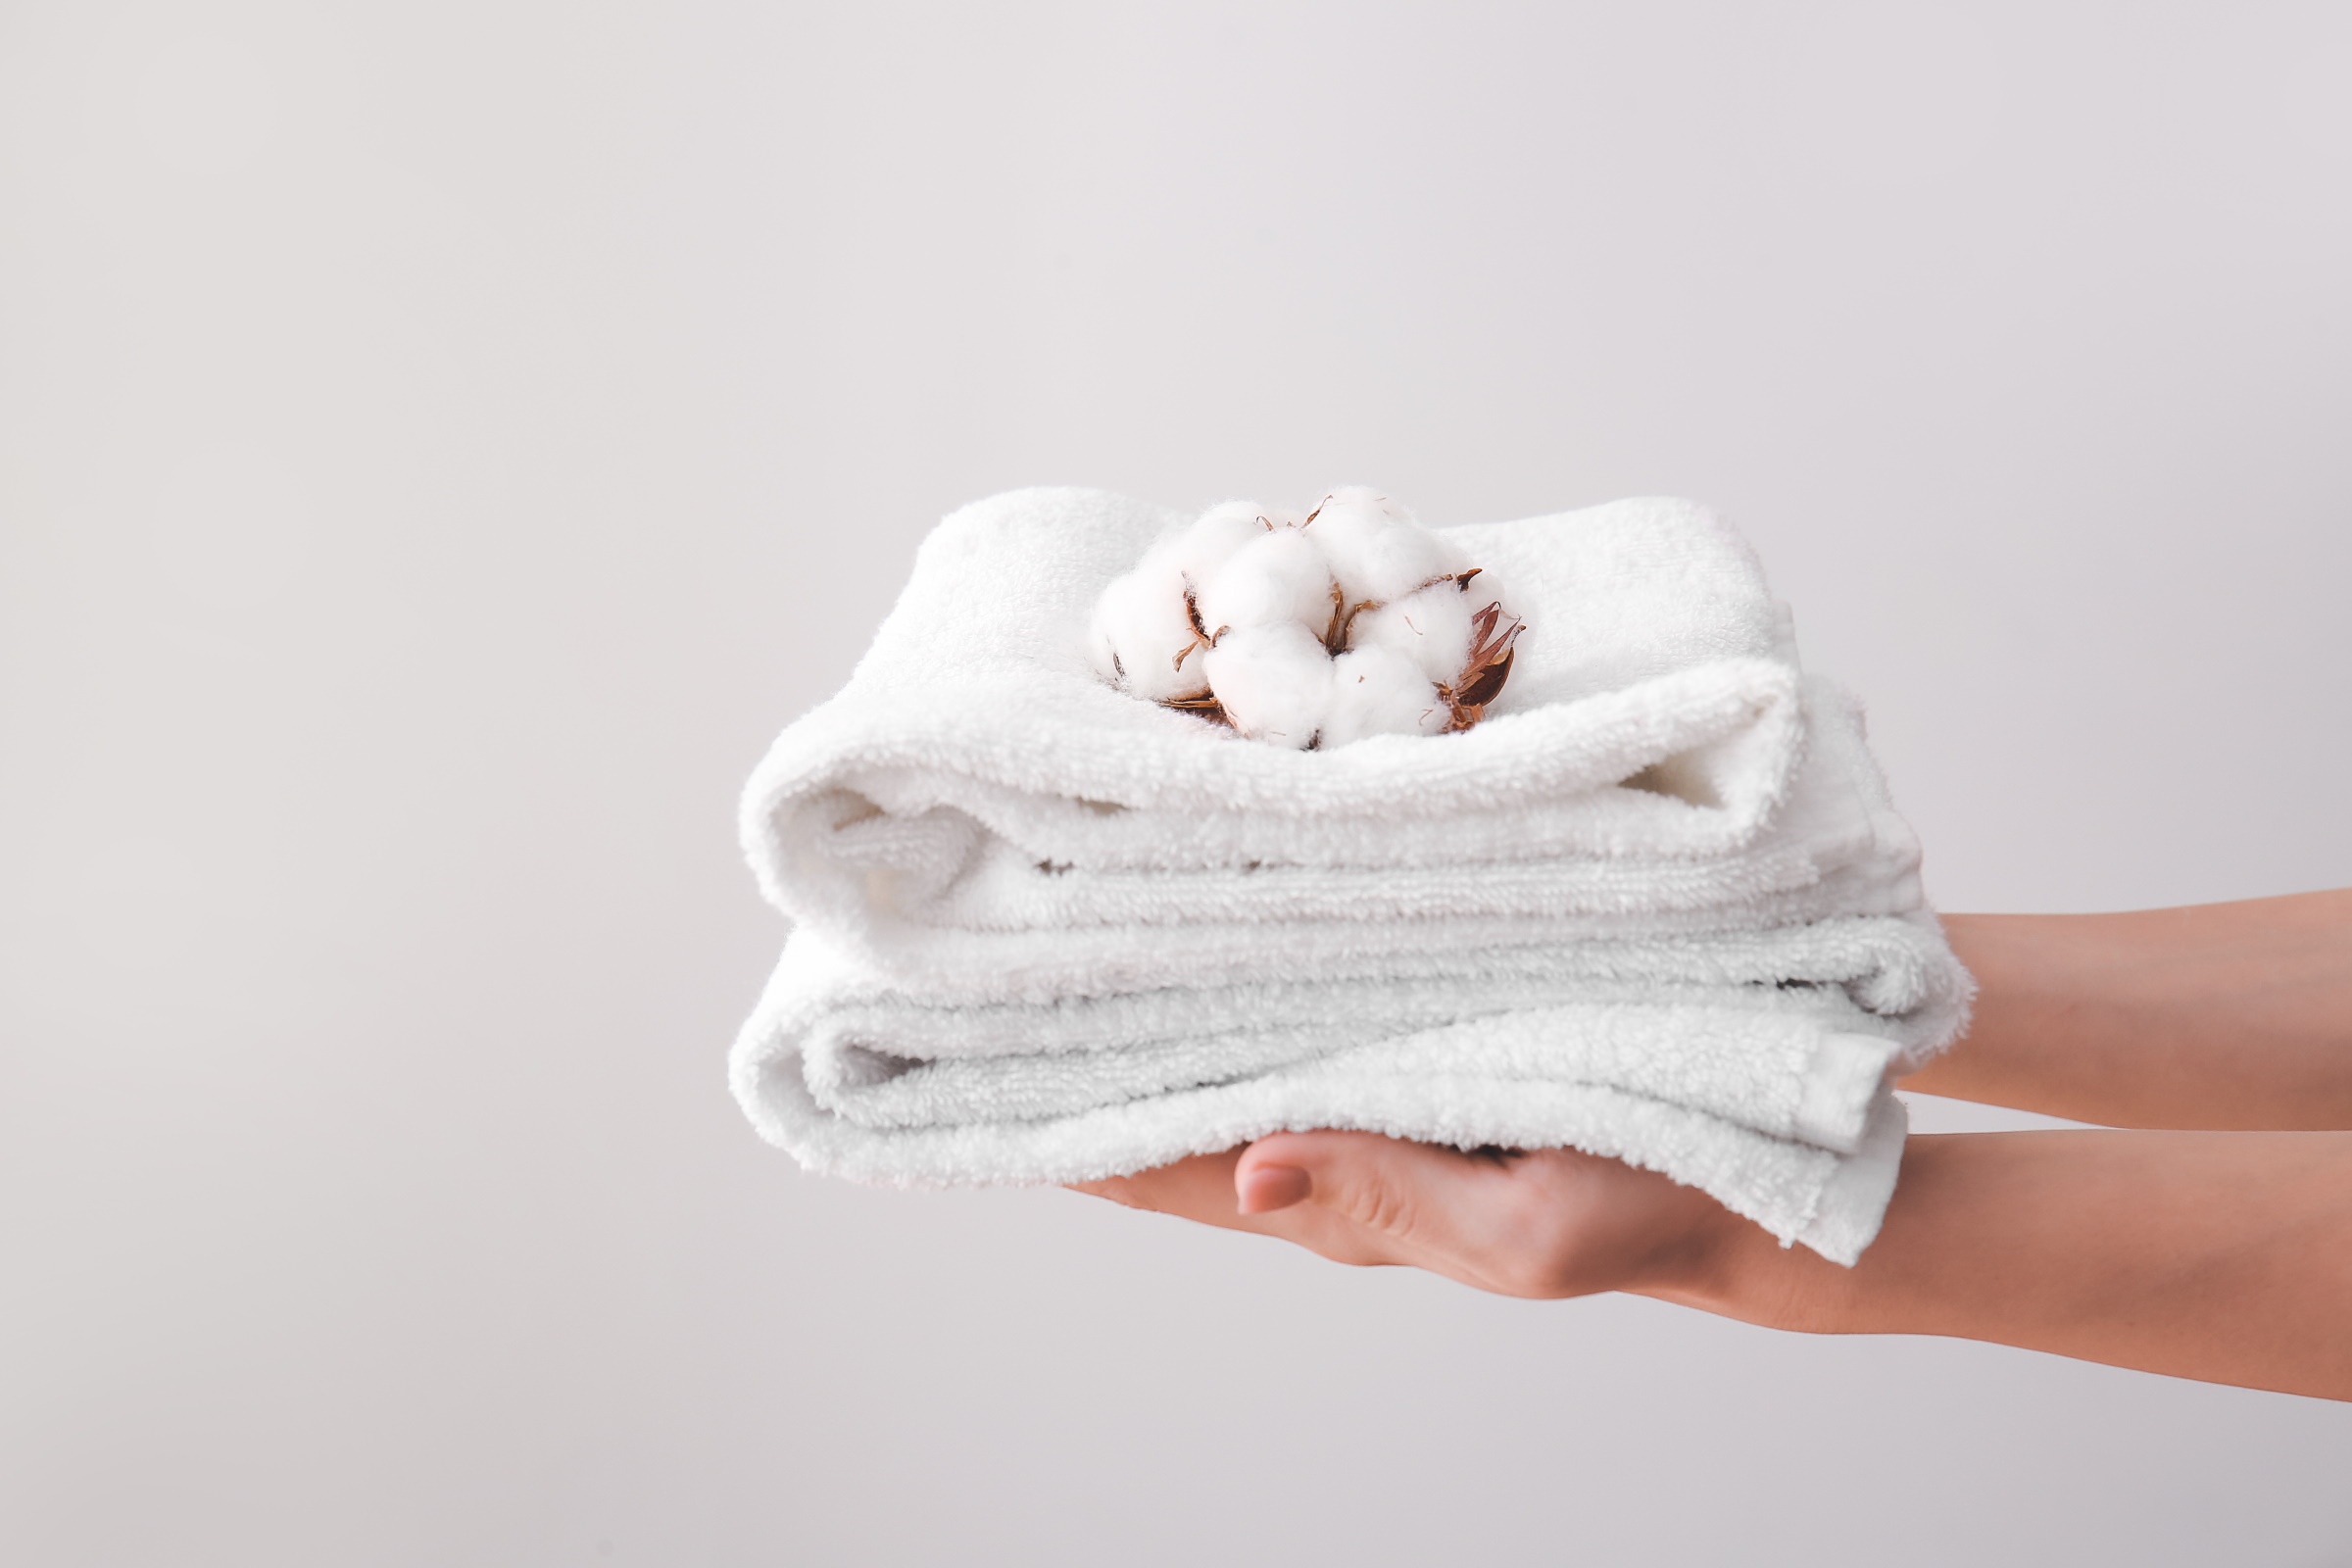 film woensdag verfrommeld Zes tips voor altijd zijdezachte handdoeken (ook als je géén wasdroger  hebt) | ID.nl